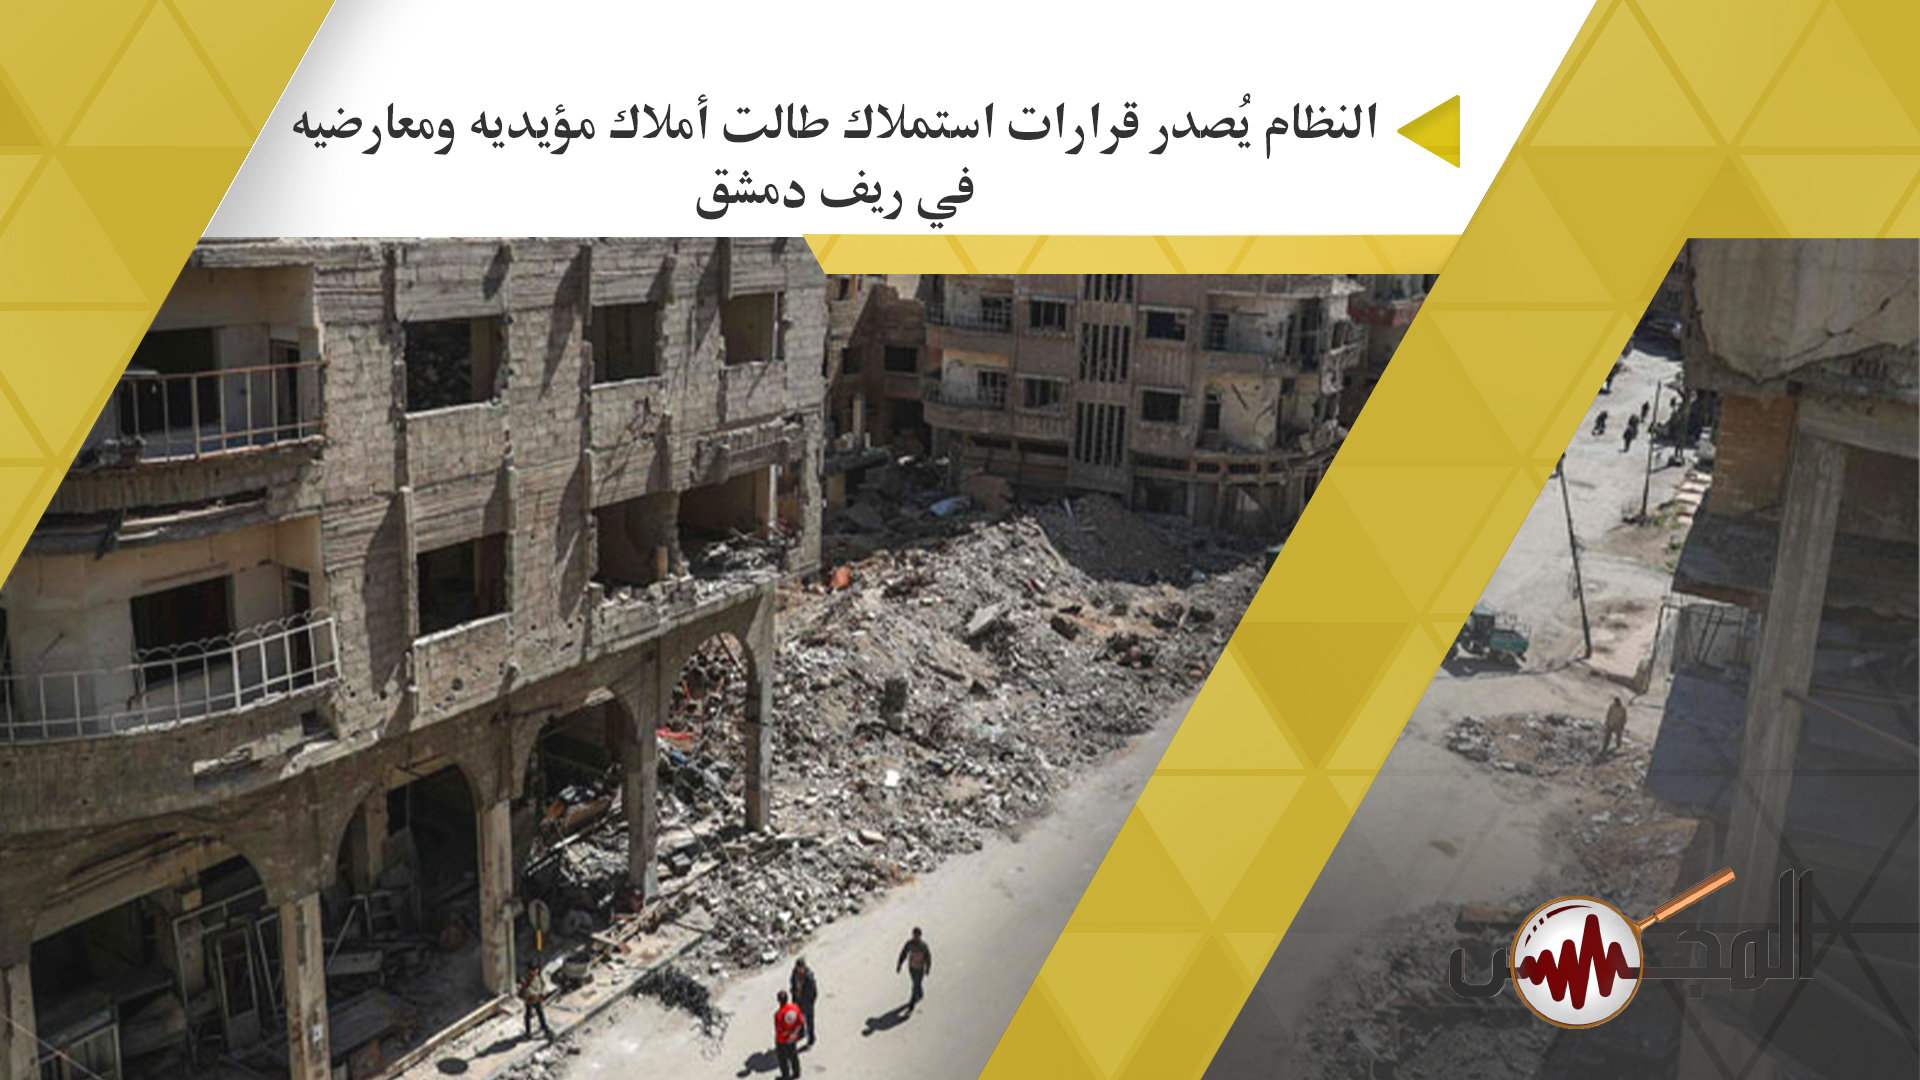  النظام يُصدر قرارات استملاك طالت أملاك مؤيديه ومعارضيه في ريف دمشق